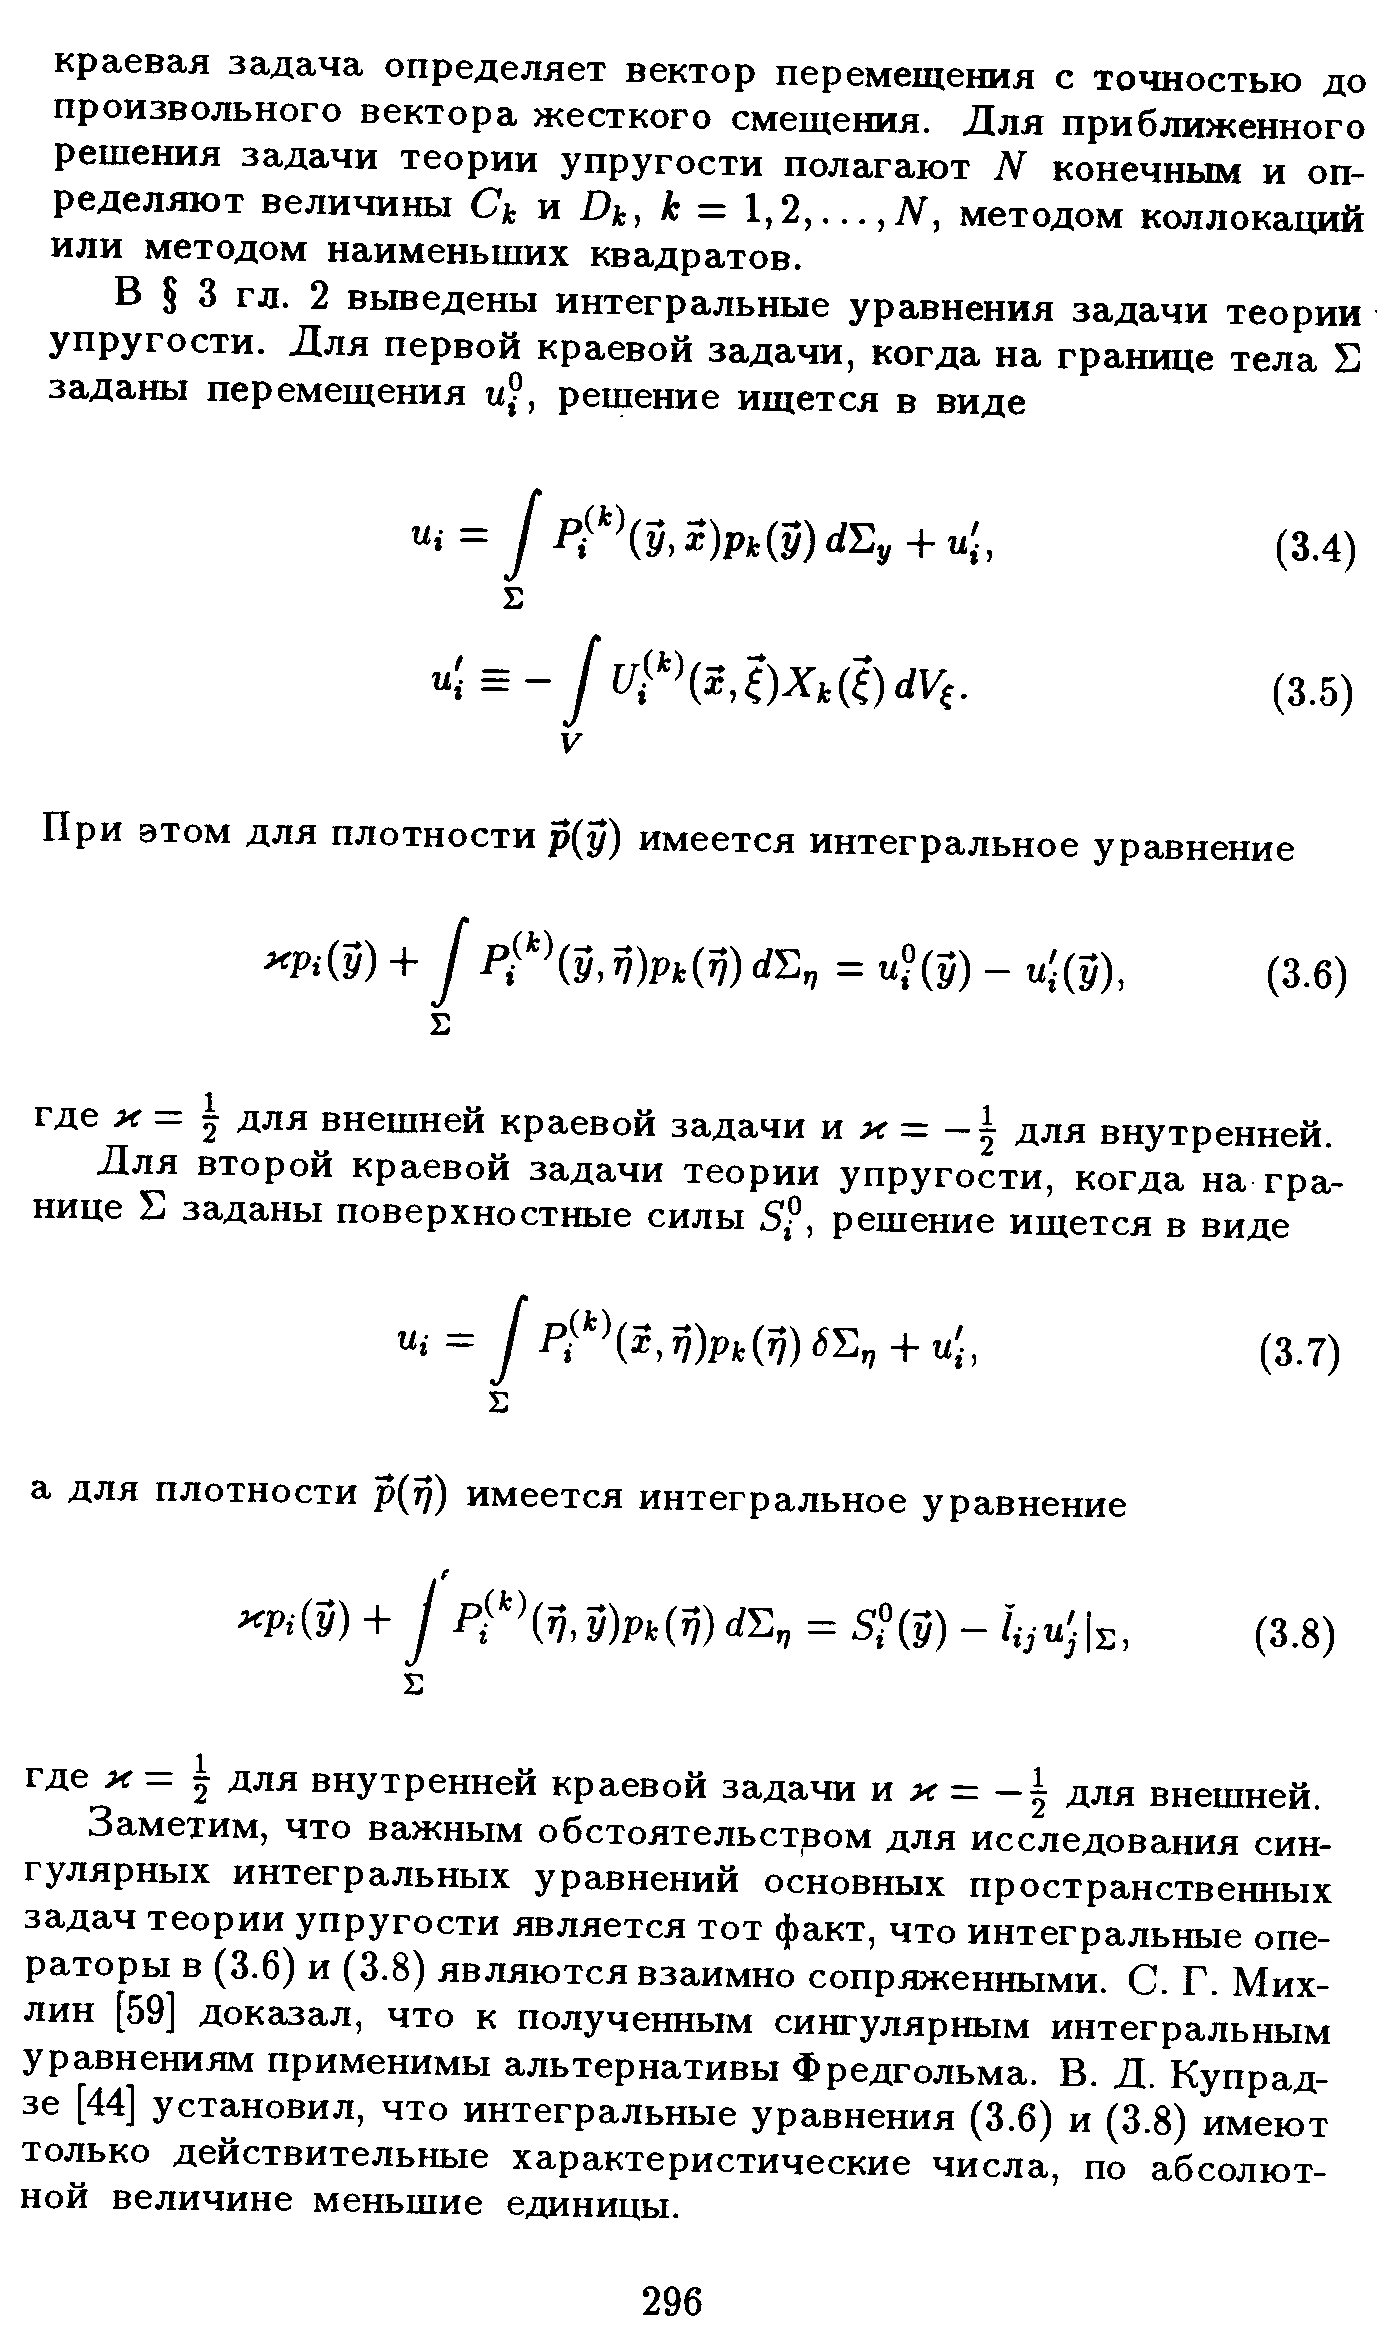 Заметим, что важным обстоятельством для исследования сингулярных интегральных уравнений основных пространственных задач теории упругости является тот факт, что интегральные операторы в (3.6) и (3.8) являются взаимно сопряженными. С. Г. Мих-лин [59] доказал, что к полученным сингулярным интегральным уравнениям применимы альтернативы Фредгольма. В. Д. Купрад-зе [44] установил, что интегральные уравнения (3.6) и (3.8) имеют только действительные характеристические числа, по абсолютной величине меньшие единицы.
